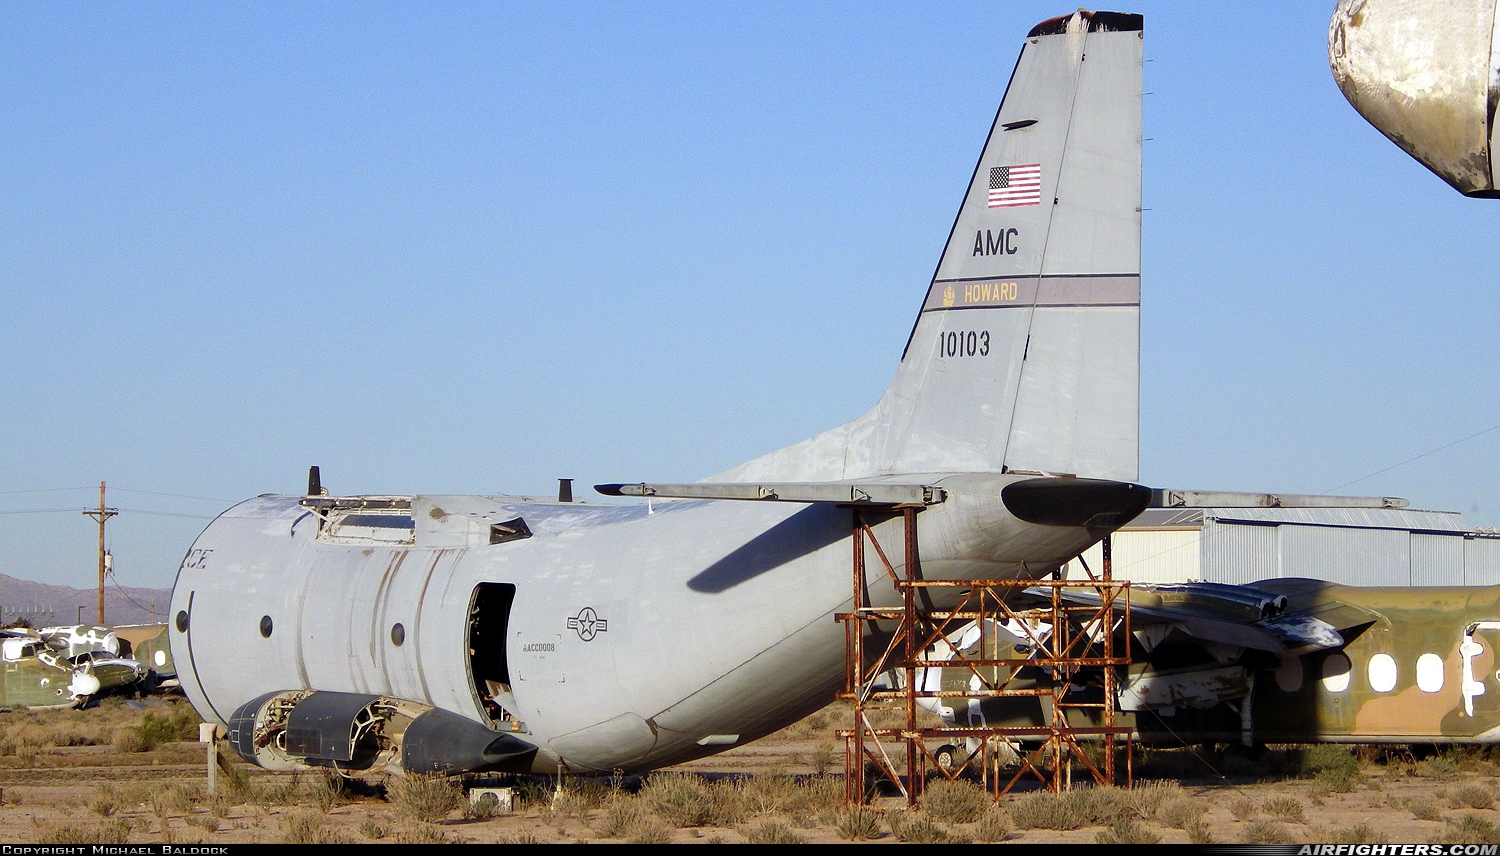 USA - Air Force Alenia Aermacchi C-27A Spartan 91-0103 at Tucson - Davis-Monthan AFB (DMA / KDMA), USA